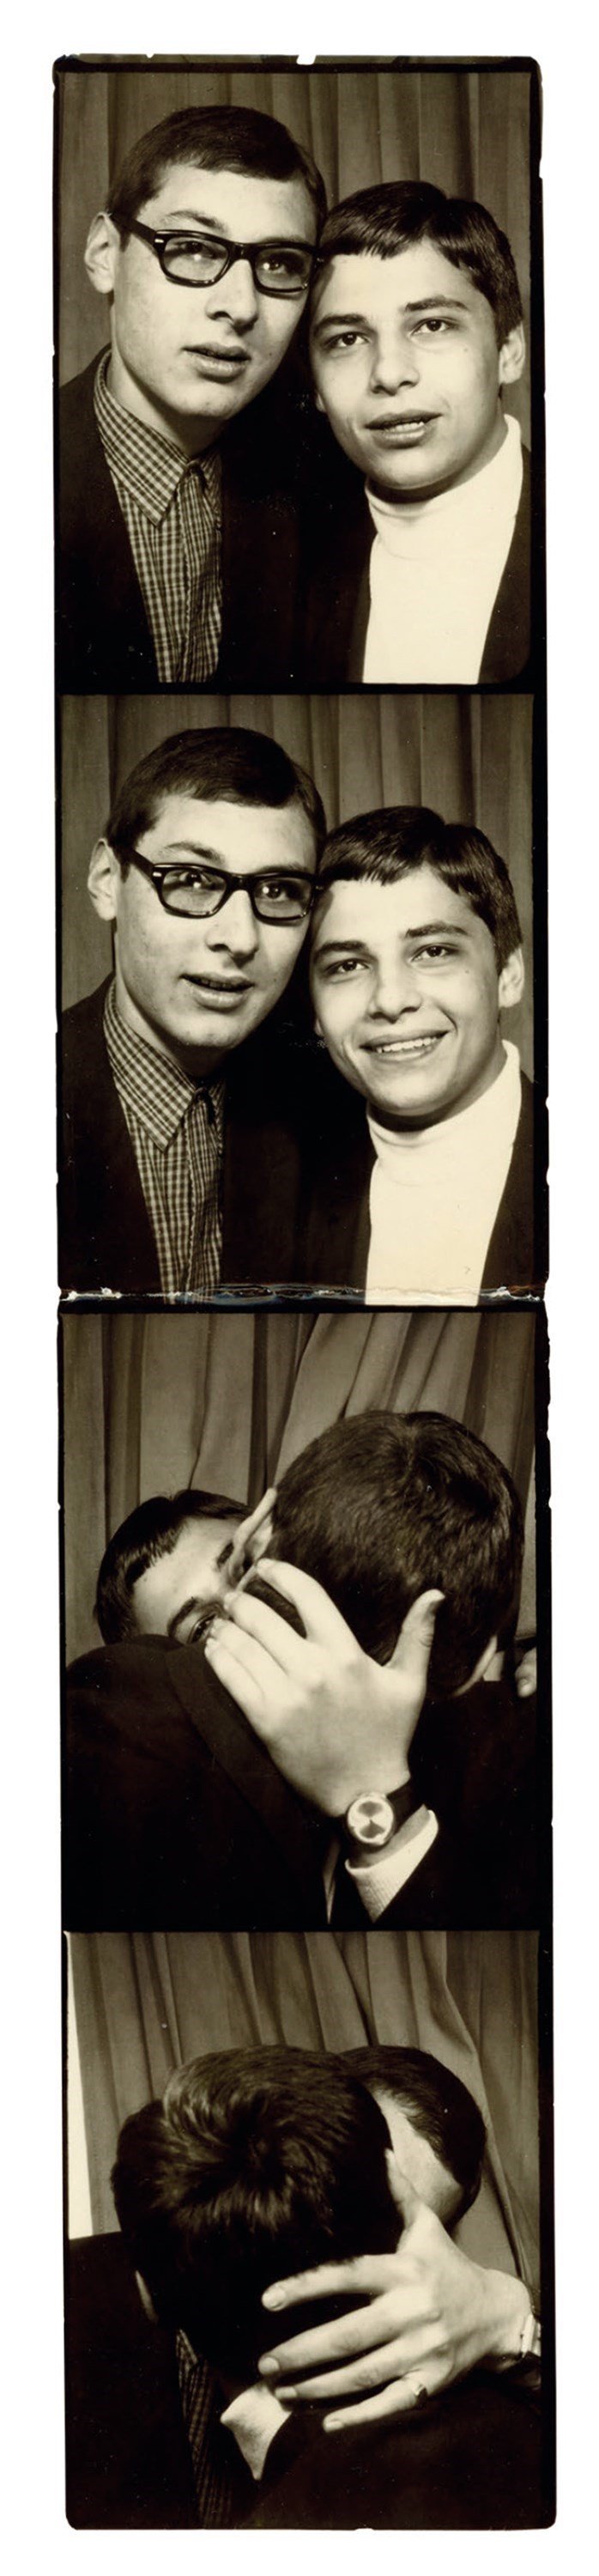 Машина часу: архівні фото про те, як цілувалися закохані 100 років тому - фото 486039